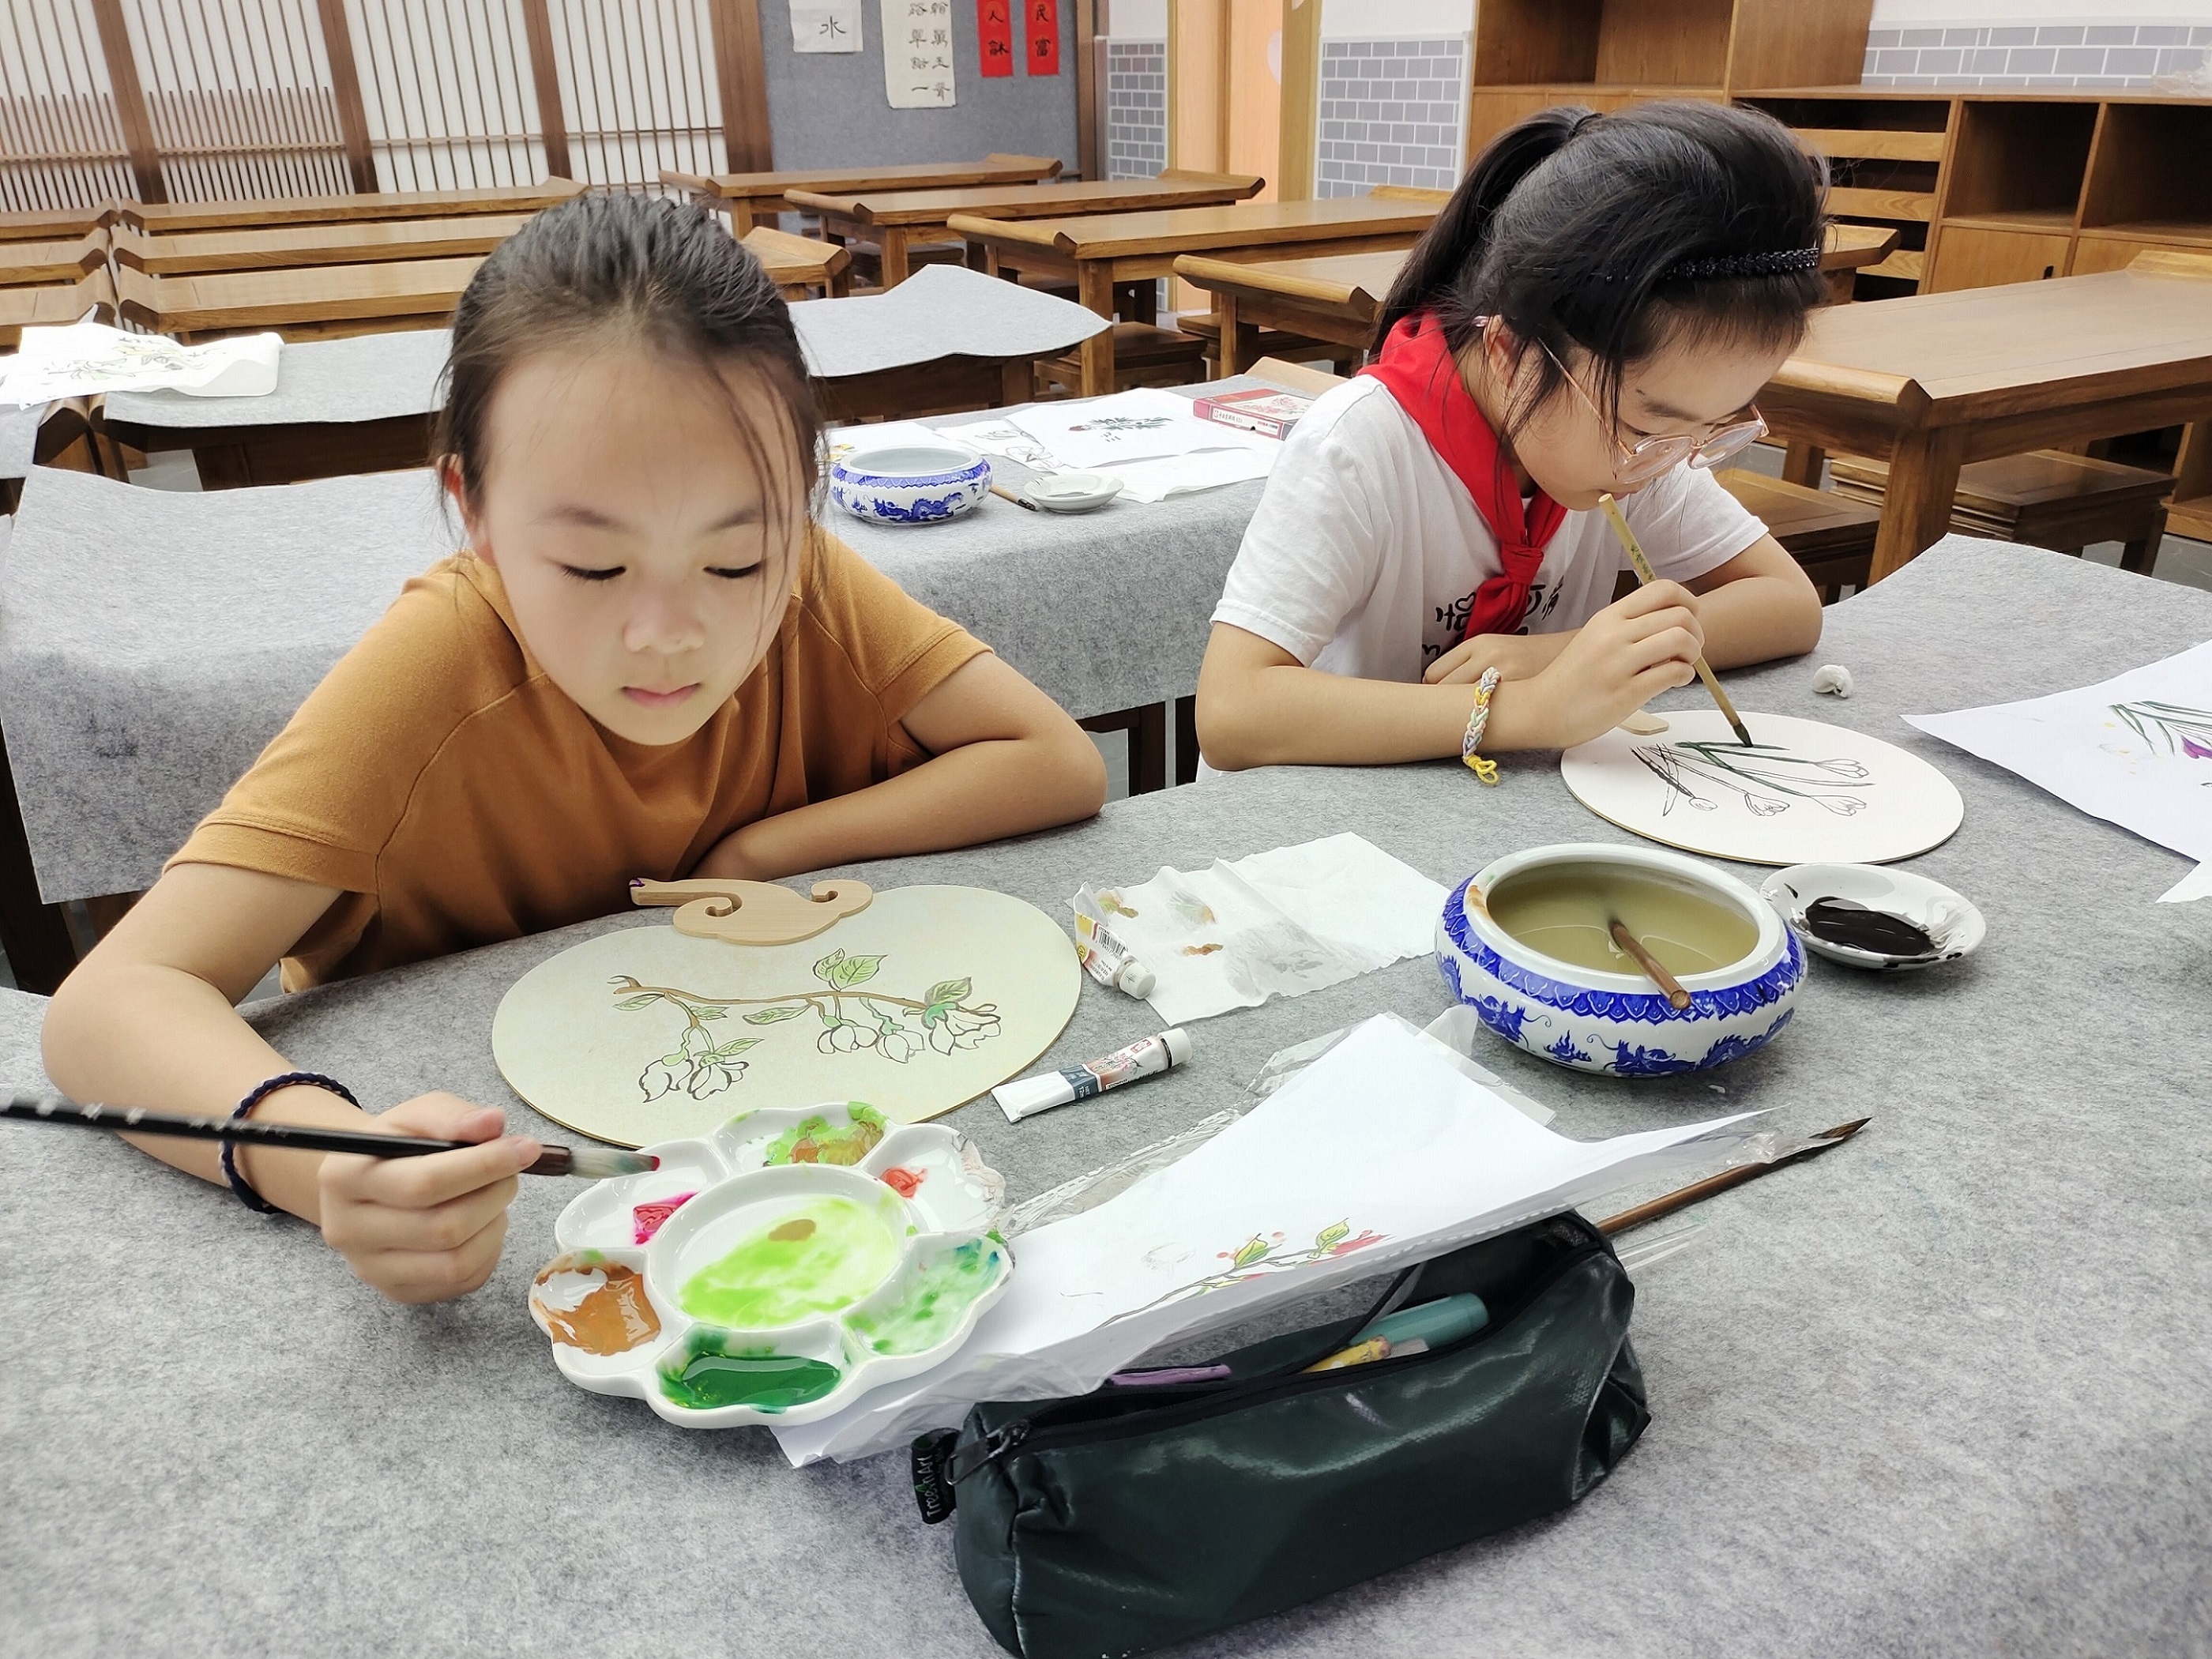 张家港市城南小学重视传统文化教育，依托“儿童问学”科学课程项目，开设系列实践课，让中华优秀传统文化活起来、立起来。图：绘制中草药团扇